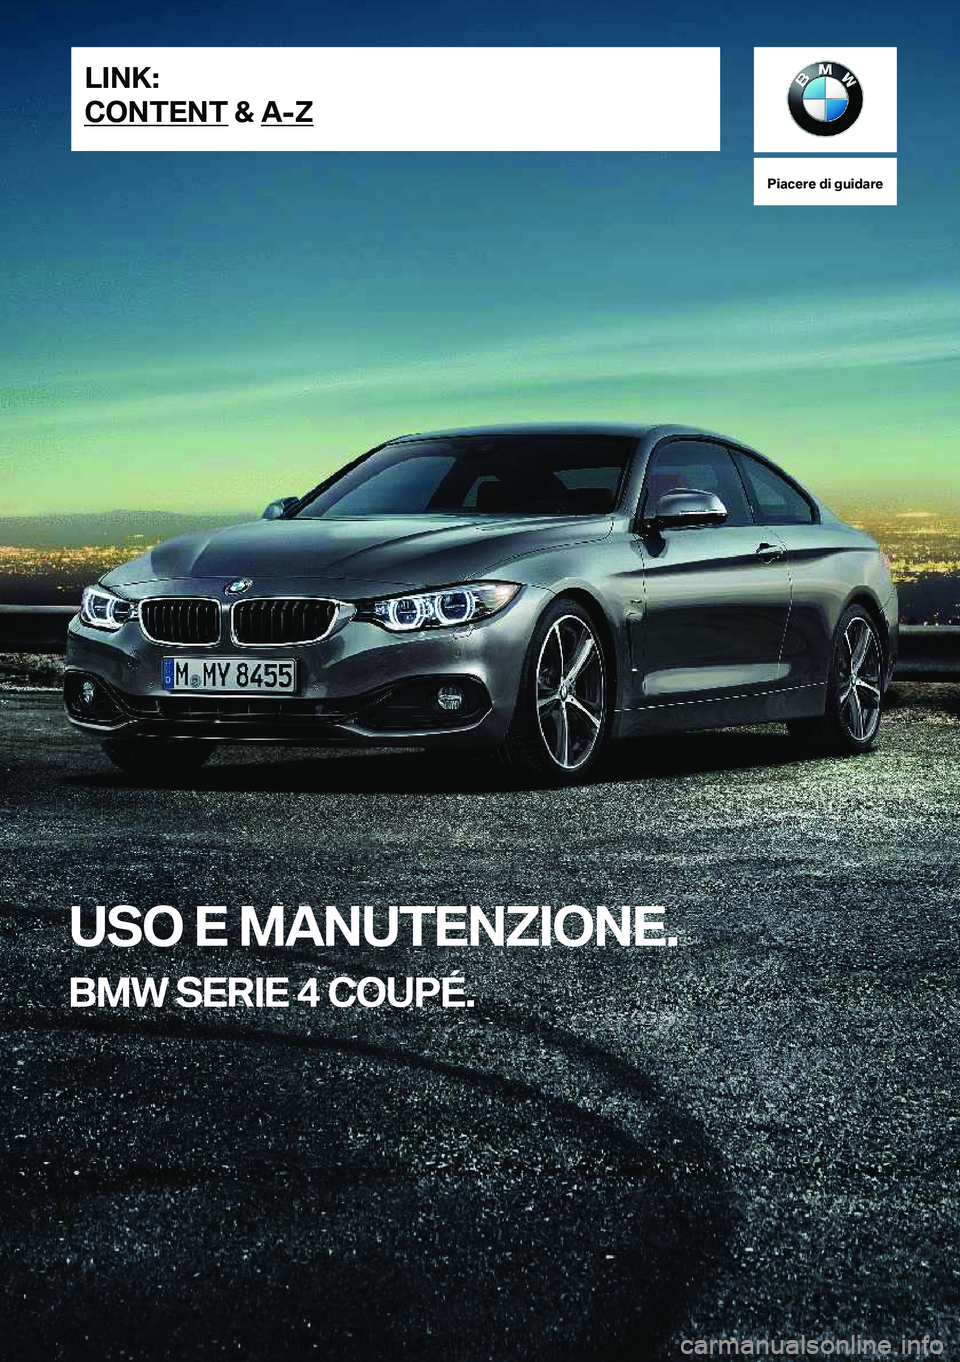 BMW 4 SERIES COUPE 2020  Libretti Di Uso E manutenzione (in Italian) �P�i�a�c�e�r�e��d�i��g�u�i�d�a�r�e
�U�S�O��E��M�A�N�U�T�E�N�;�I�O�N�E�.
�B�M�W��S�E�R�I�E��4��C�O�U�P�